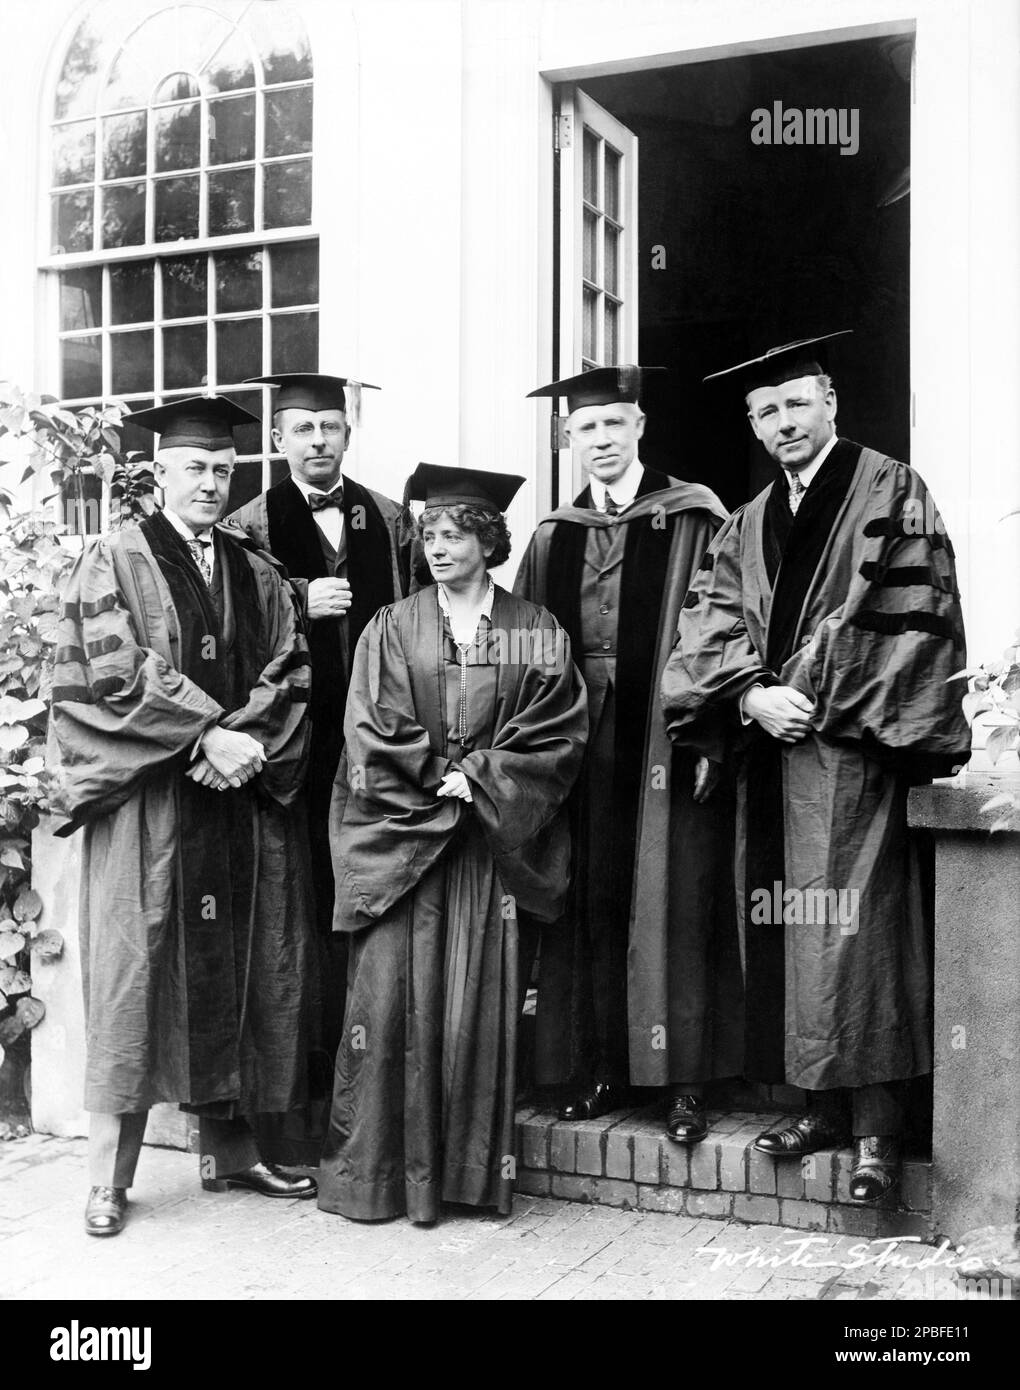 1921 , USA : l'actrice américaine de théâtre MAUDE ADAMS ( 1972 - 1953 ) reçoit une Laurea Honoris Causa dans des robes de remise des diplômes . De gauche dans cette photo: J.W. Davis, J.R. Angell, c.a. Richmond et T.W. Lamont . Photo de White Studio , New York . - Atrice - TEATRO - THÉÂTRE - DIVA - DIVINA - BROADWAY - tota - laureato - laureata - Collège --- Archivio GBB Banque D'Images